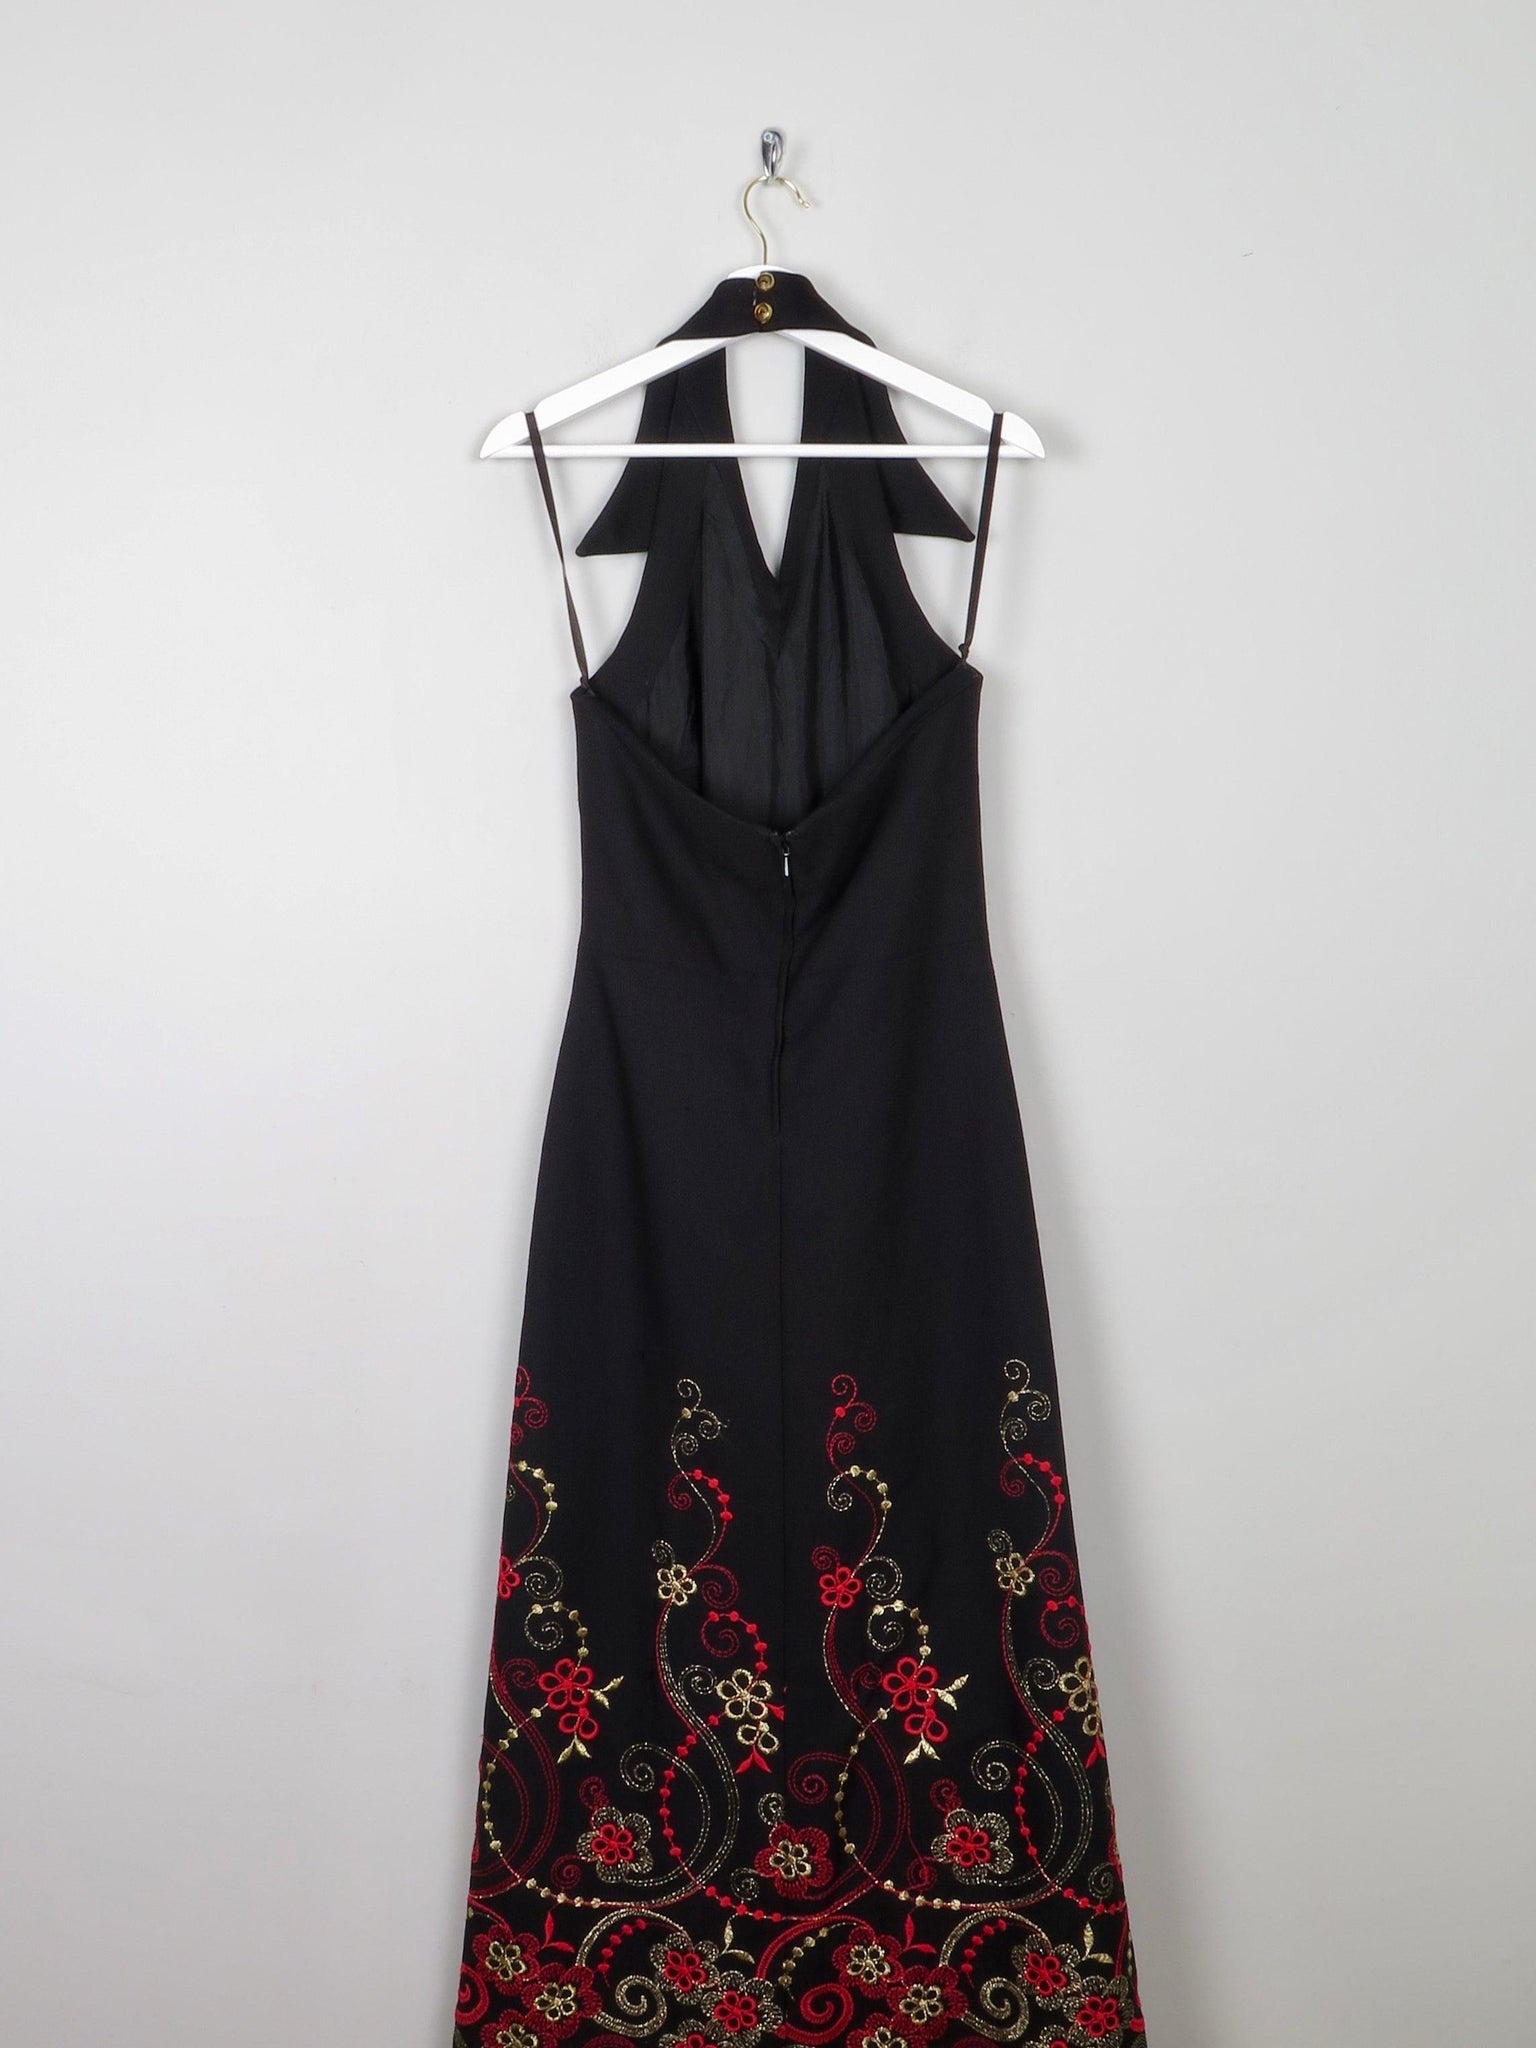 Black Embellished Embroidered Halter Neck 1970s Vintage Dress 10 - The Harlequin